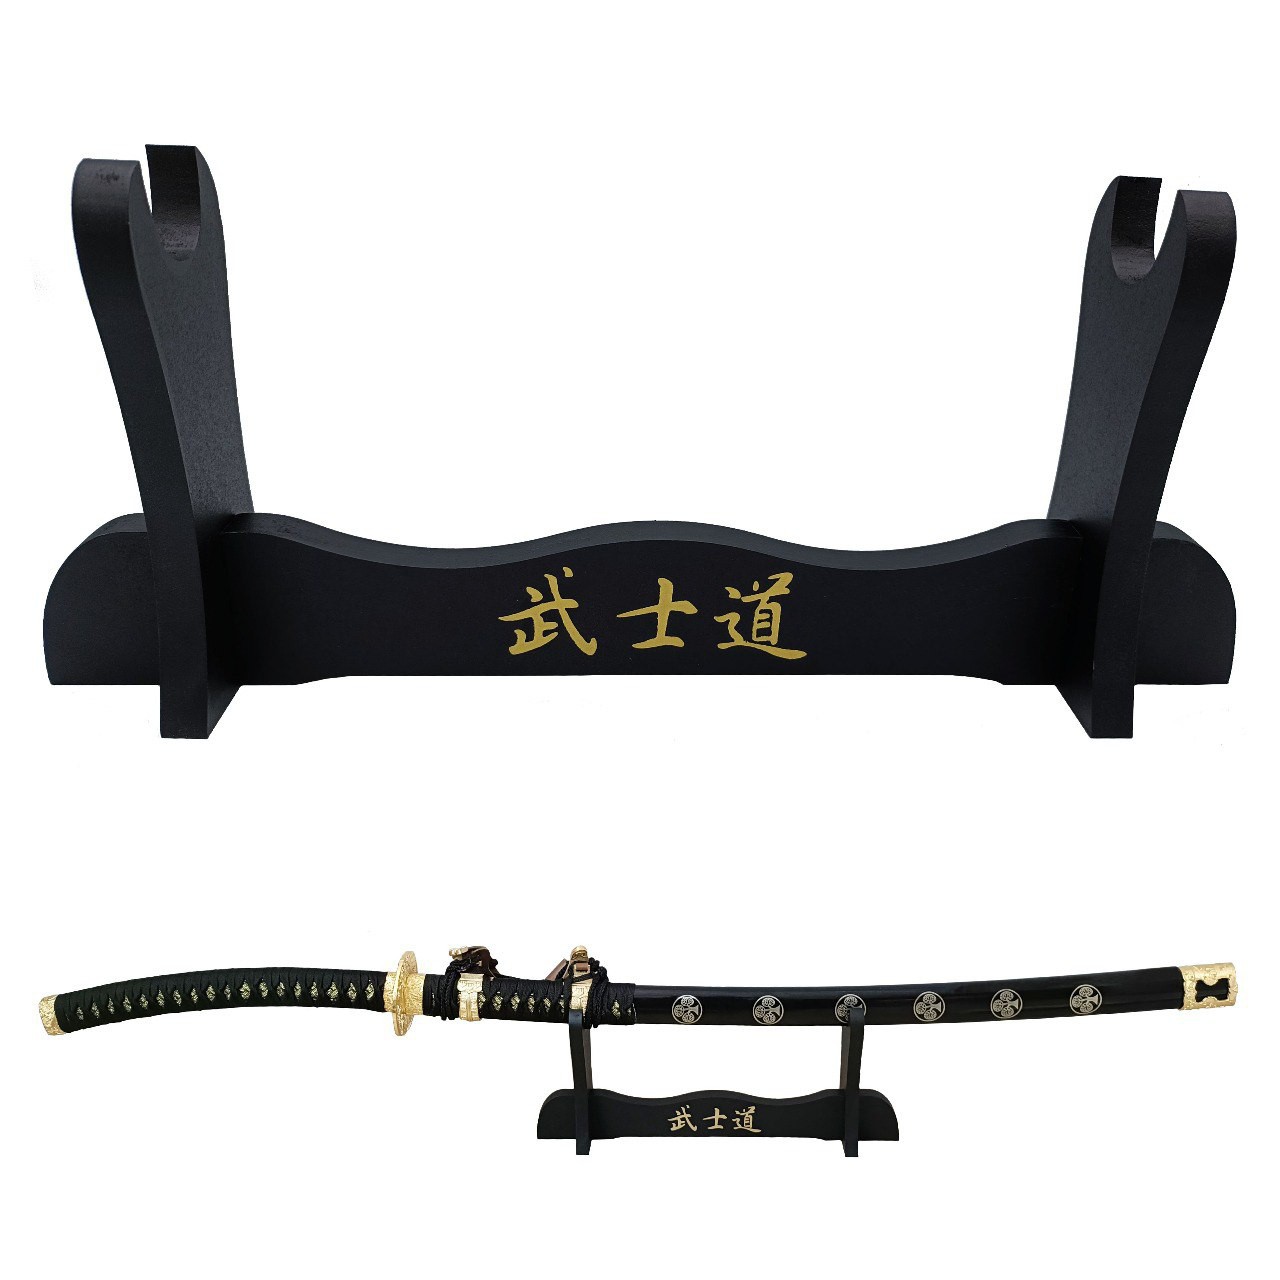 Shop SoftAir® Supporto per Katana del Dragone da Samurai da Tavolo in Legno con Scritte Giapponesi Espositore da Pavimento da 1 Posto